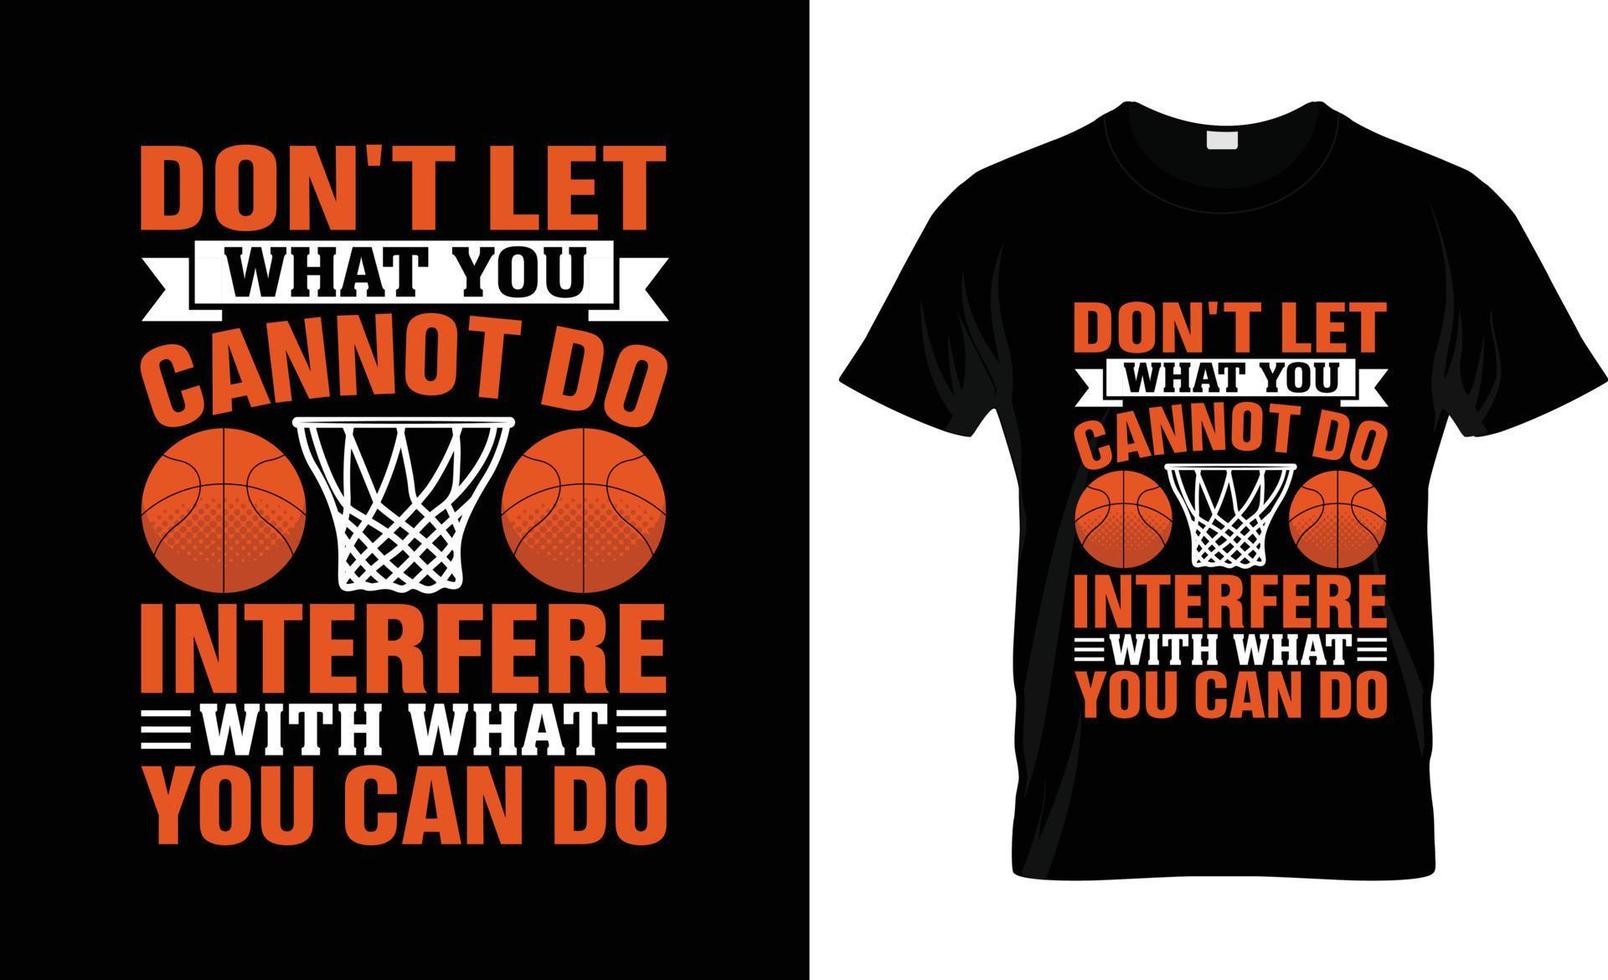 design de camiseta de basquete, slogan de camiseta de basquete e design de vestuário, tipografia de basquete, vetor de basquete, ilustração de basquete